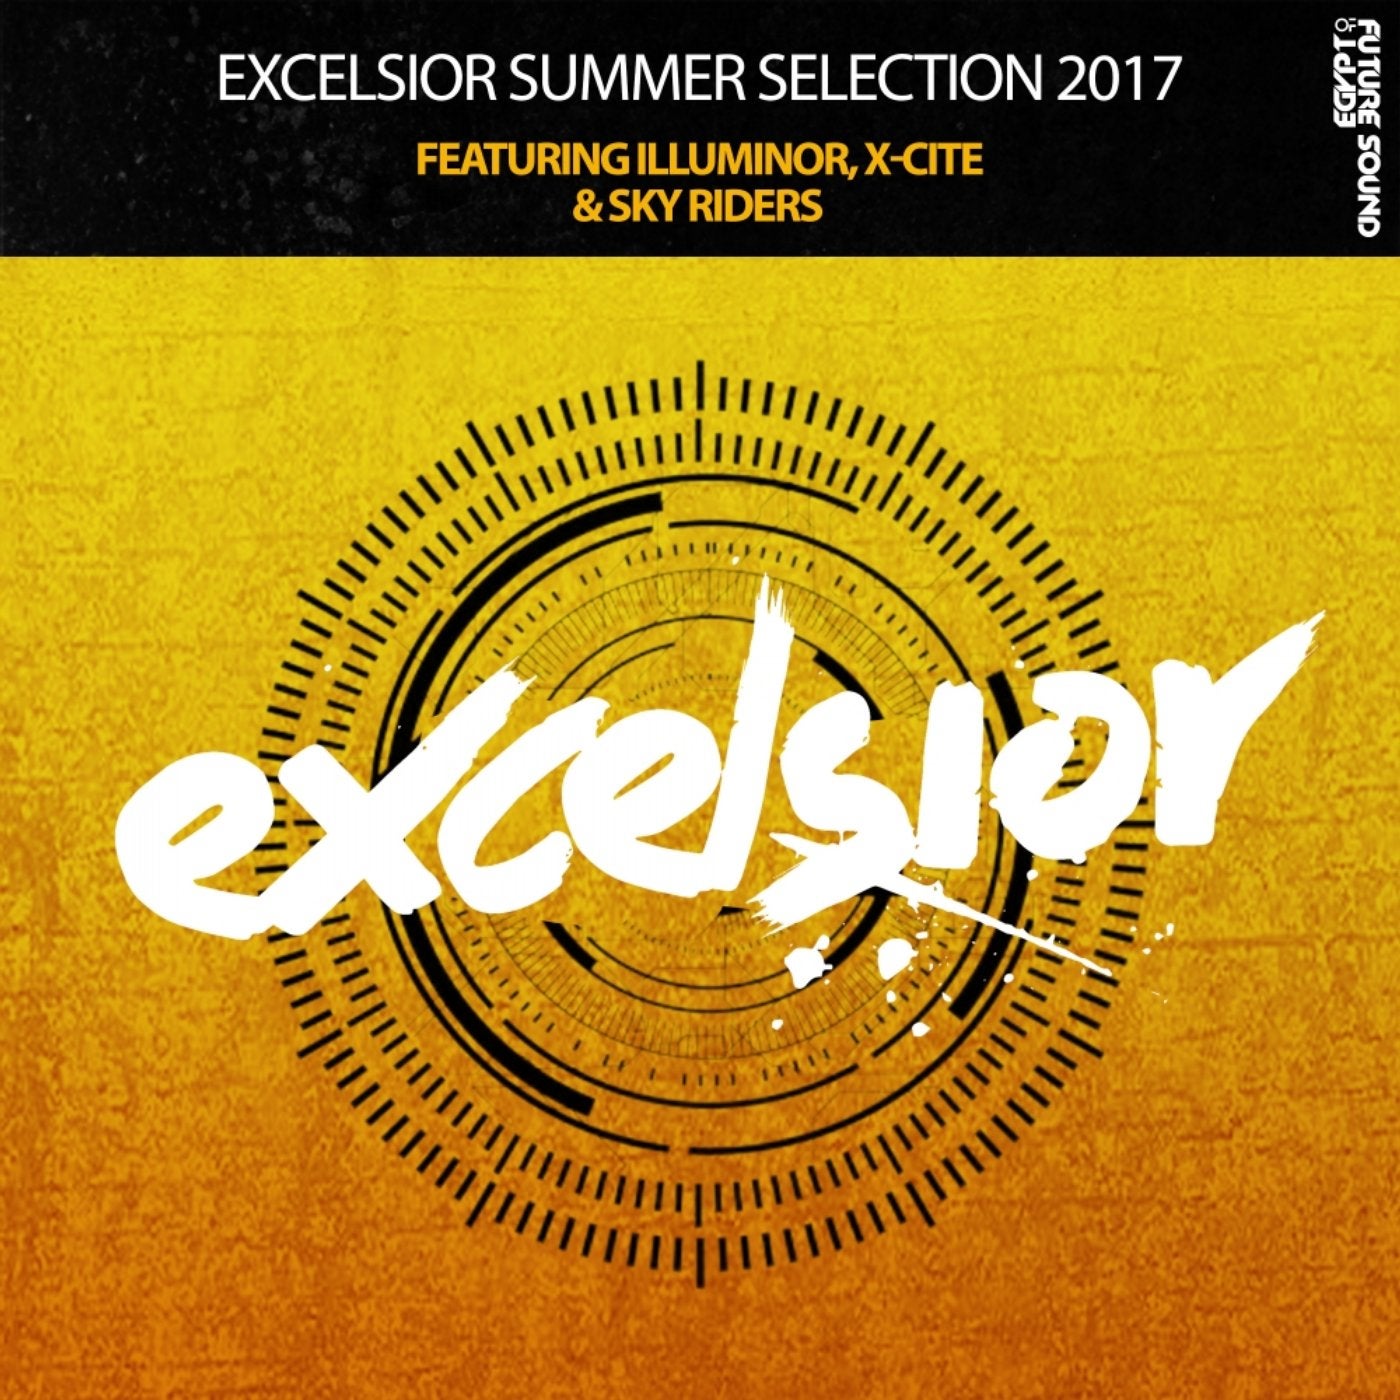 Excelsior Summer Selection 2017